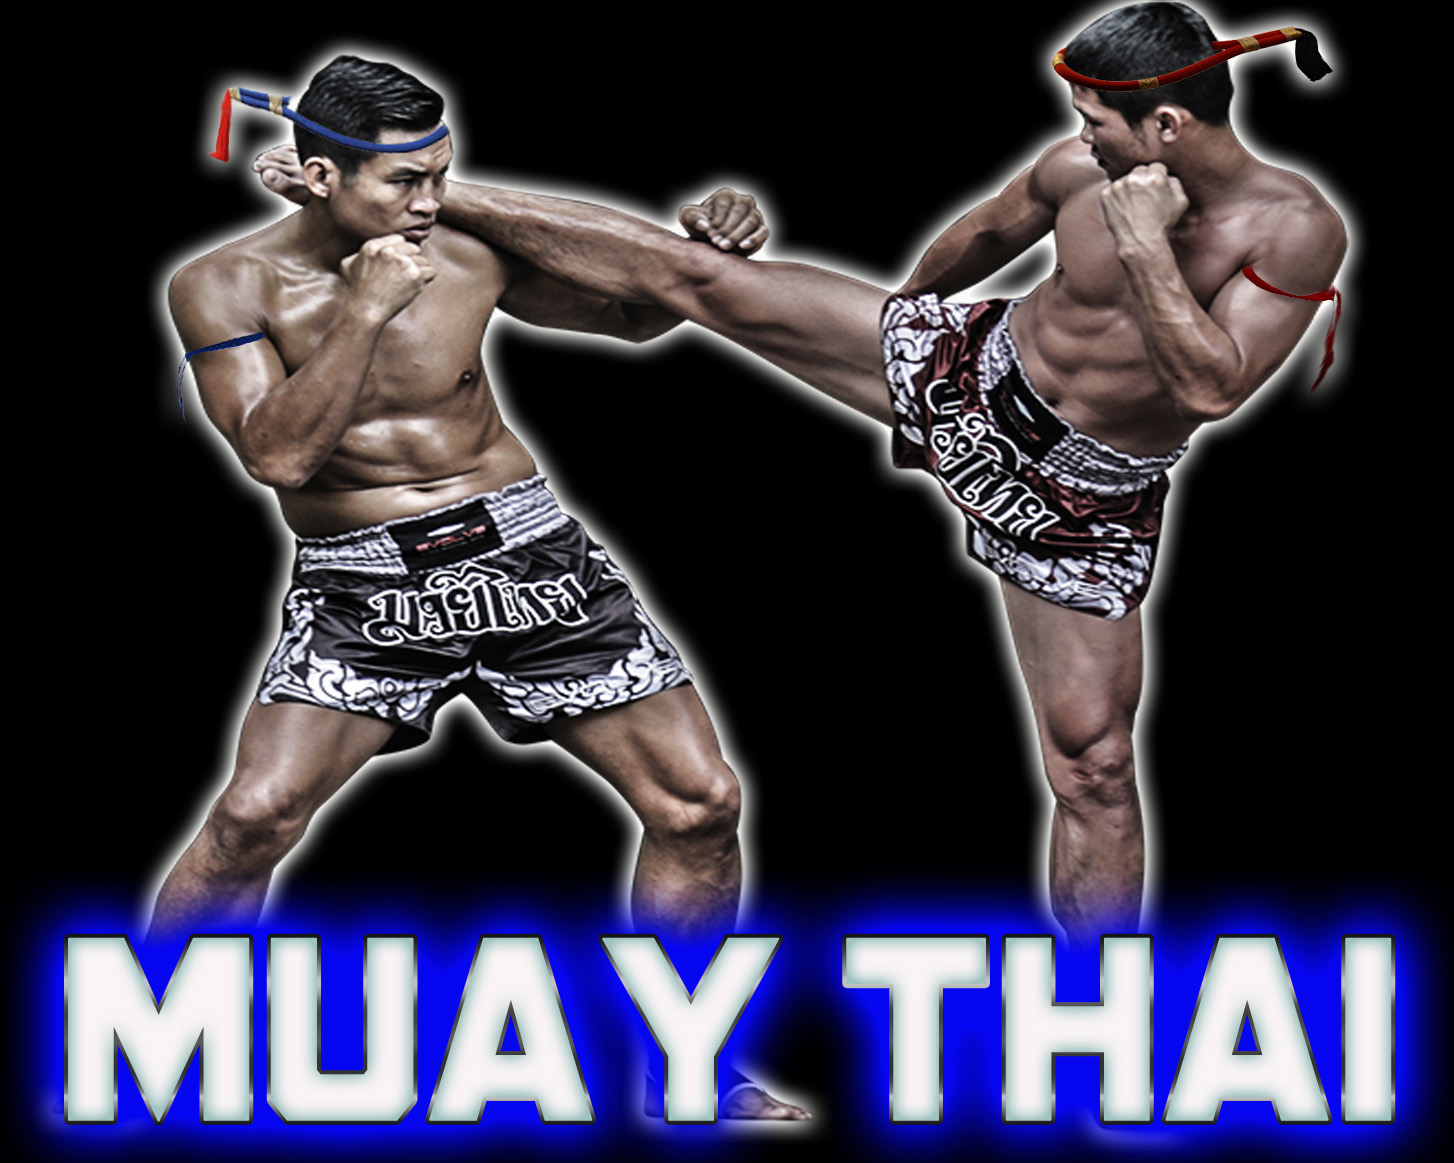 Palestre Combattimento Casilina - Palestra Muay Thai a Palestre Combattimento Casilina